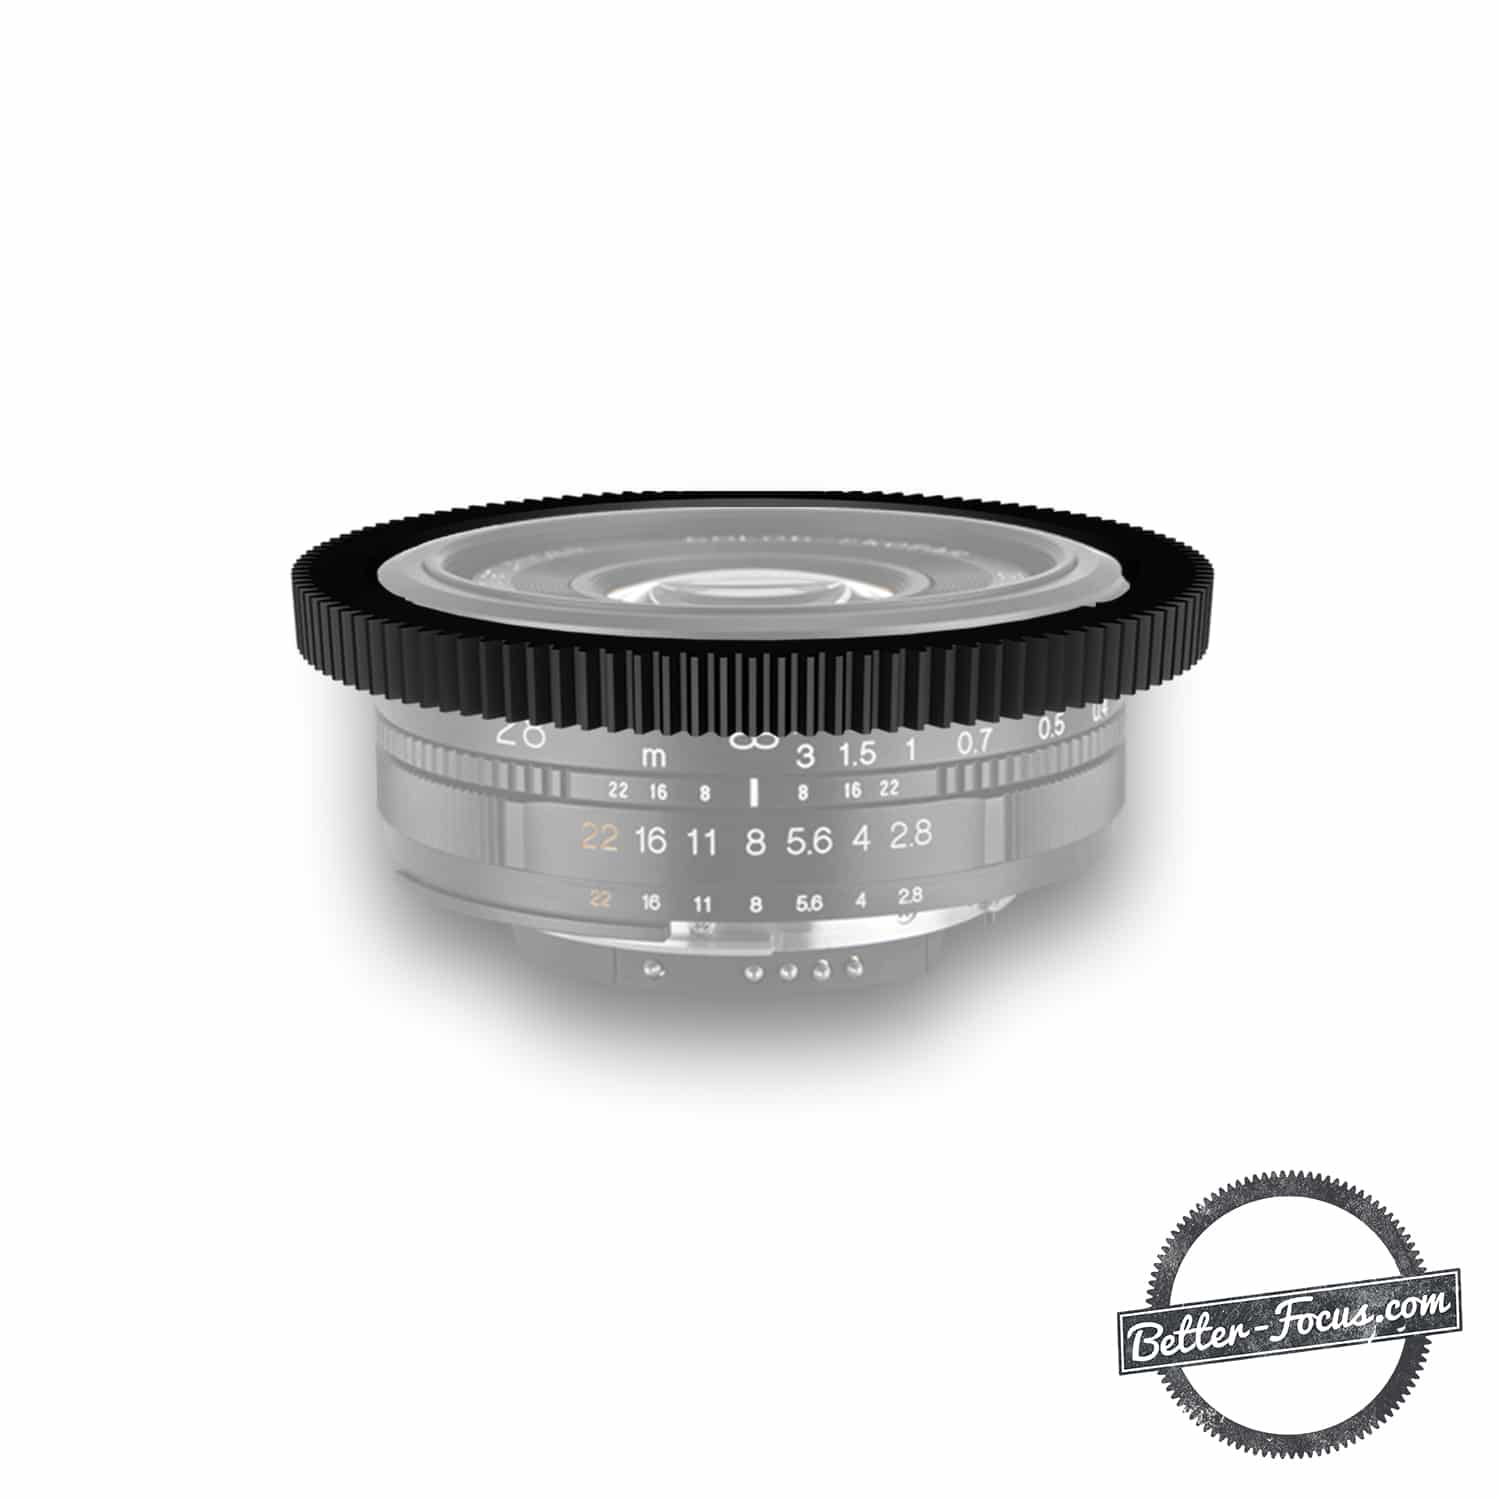 Follow Focus Gear for VOIGTLANDER 28MM F2.8 COLOR SKOPAR SLII (NIKON MOUNT ONLY)  lens